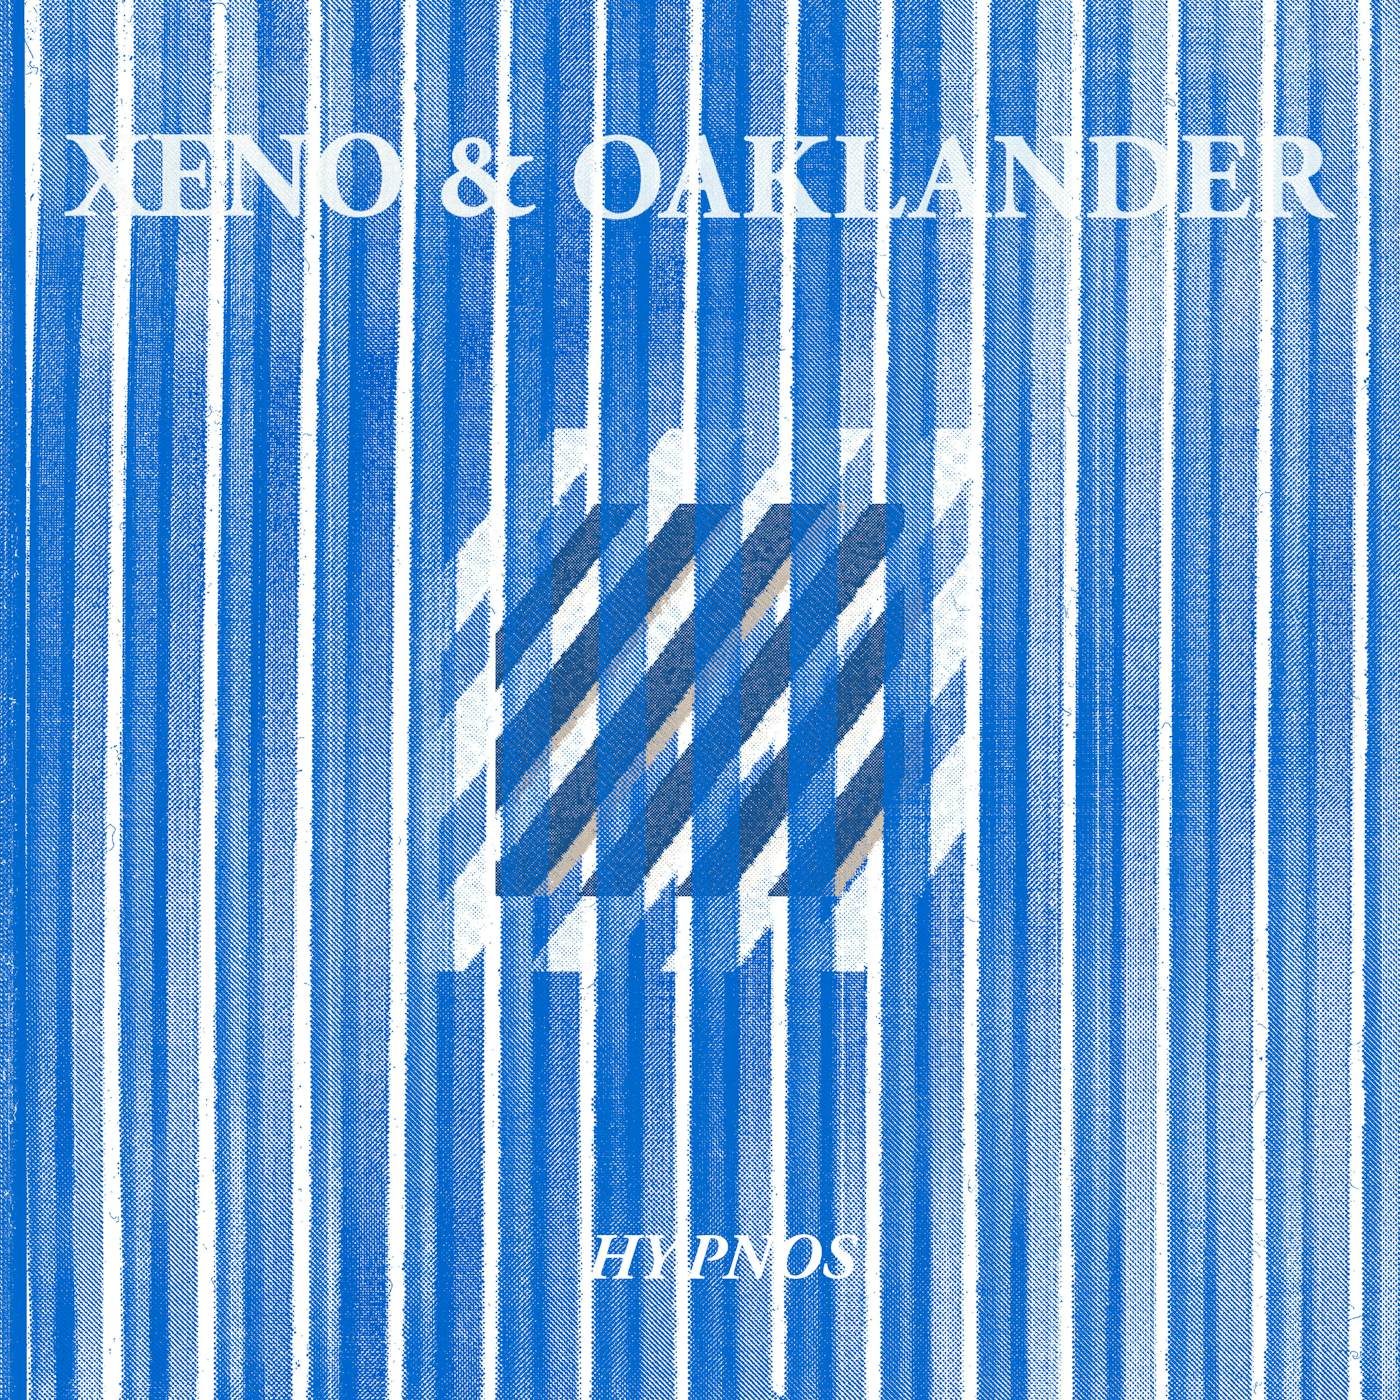 Xeno & Oaklander Hypnos Vinyl Record